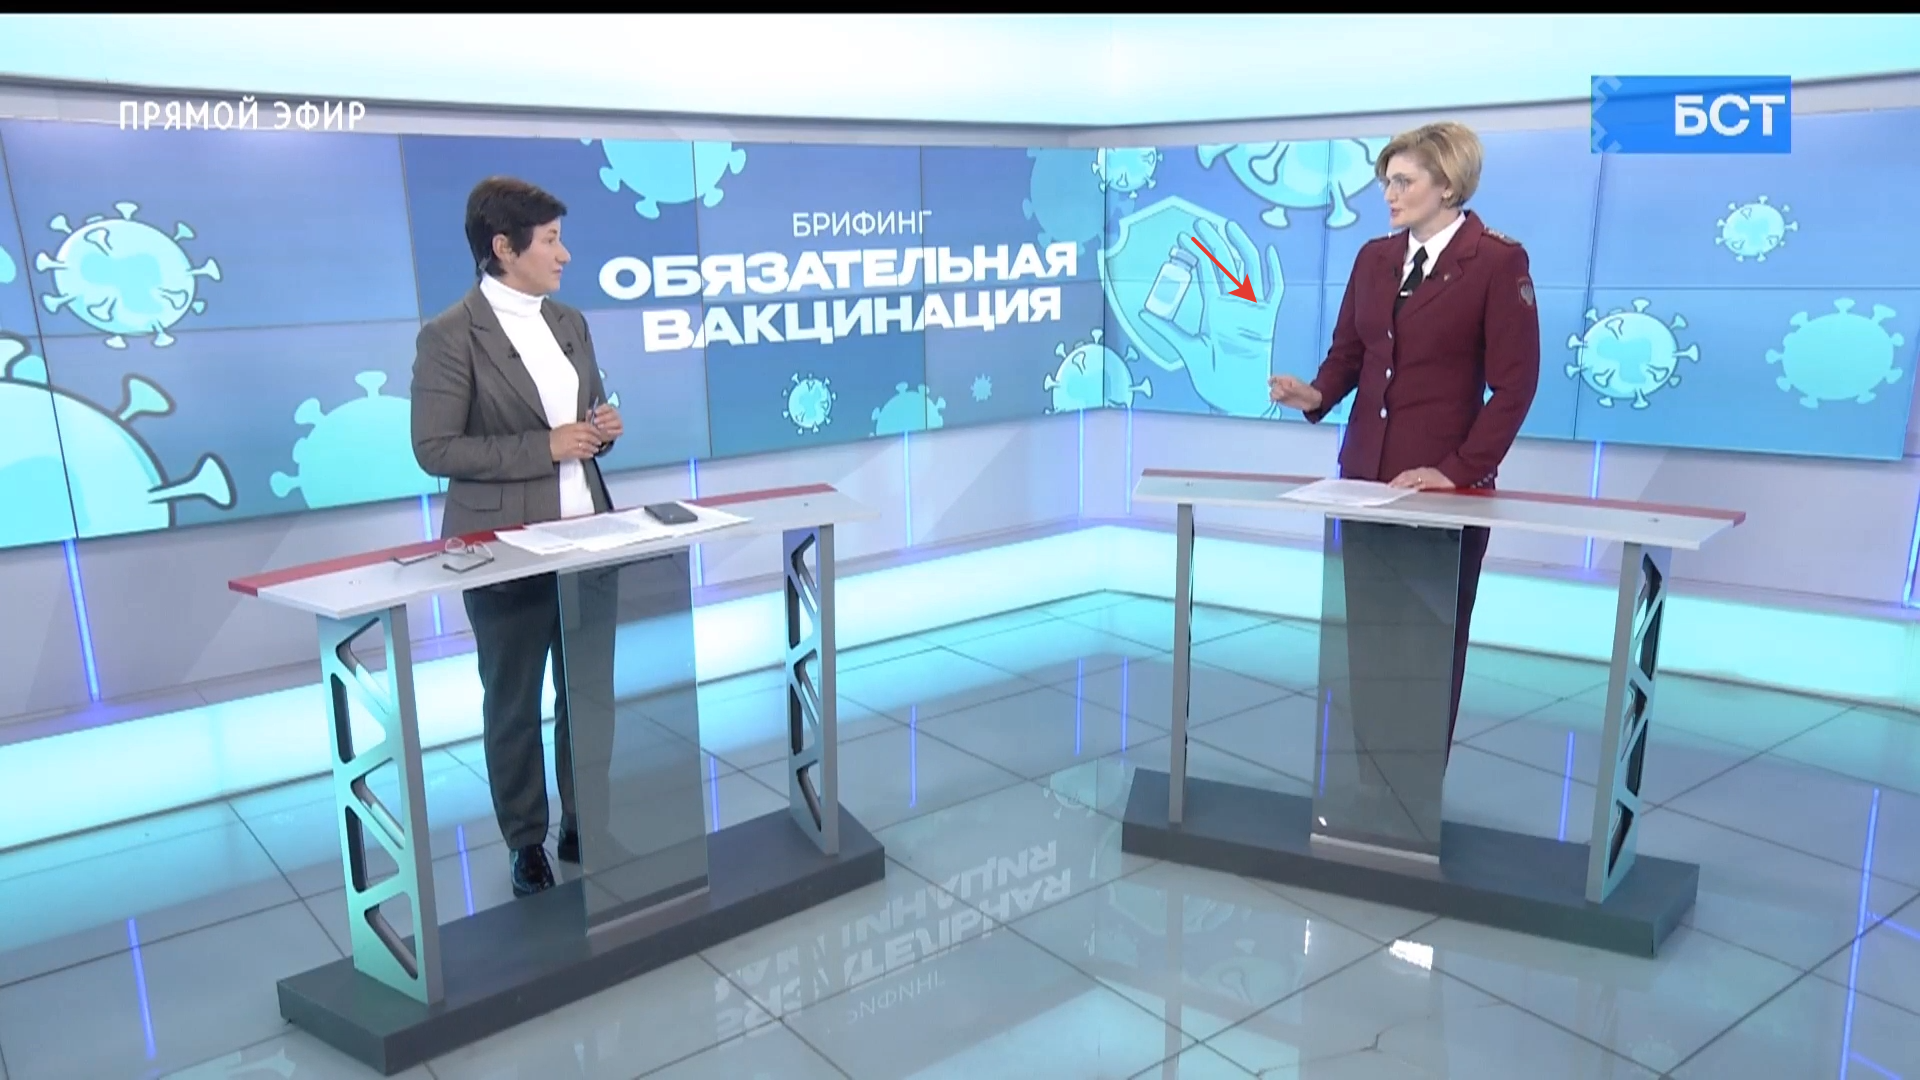 В Роспотребнадзоре Башкирии рассказали о введении обязательной вакцинации и ответили на вопросы жителей